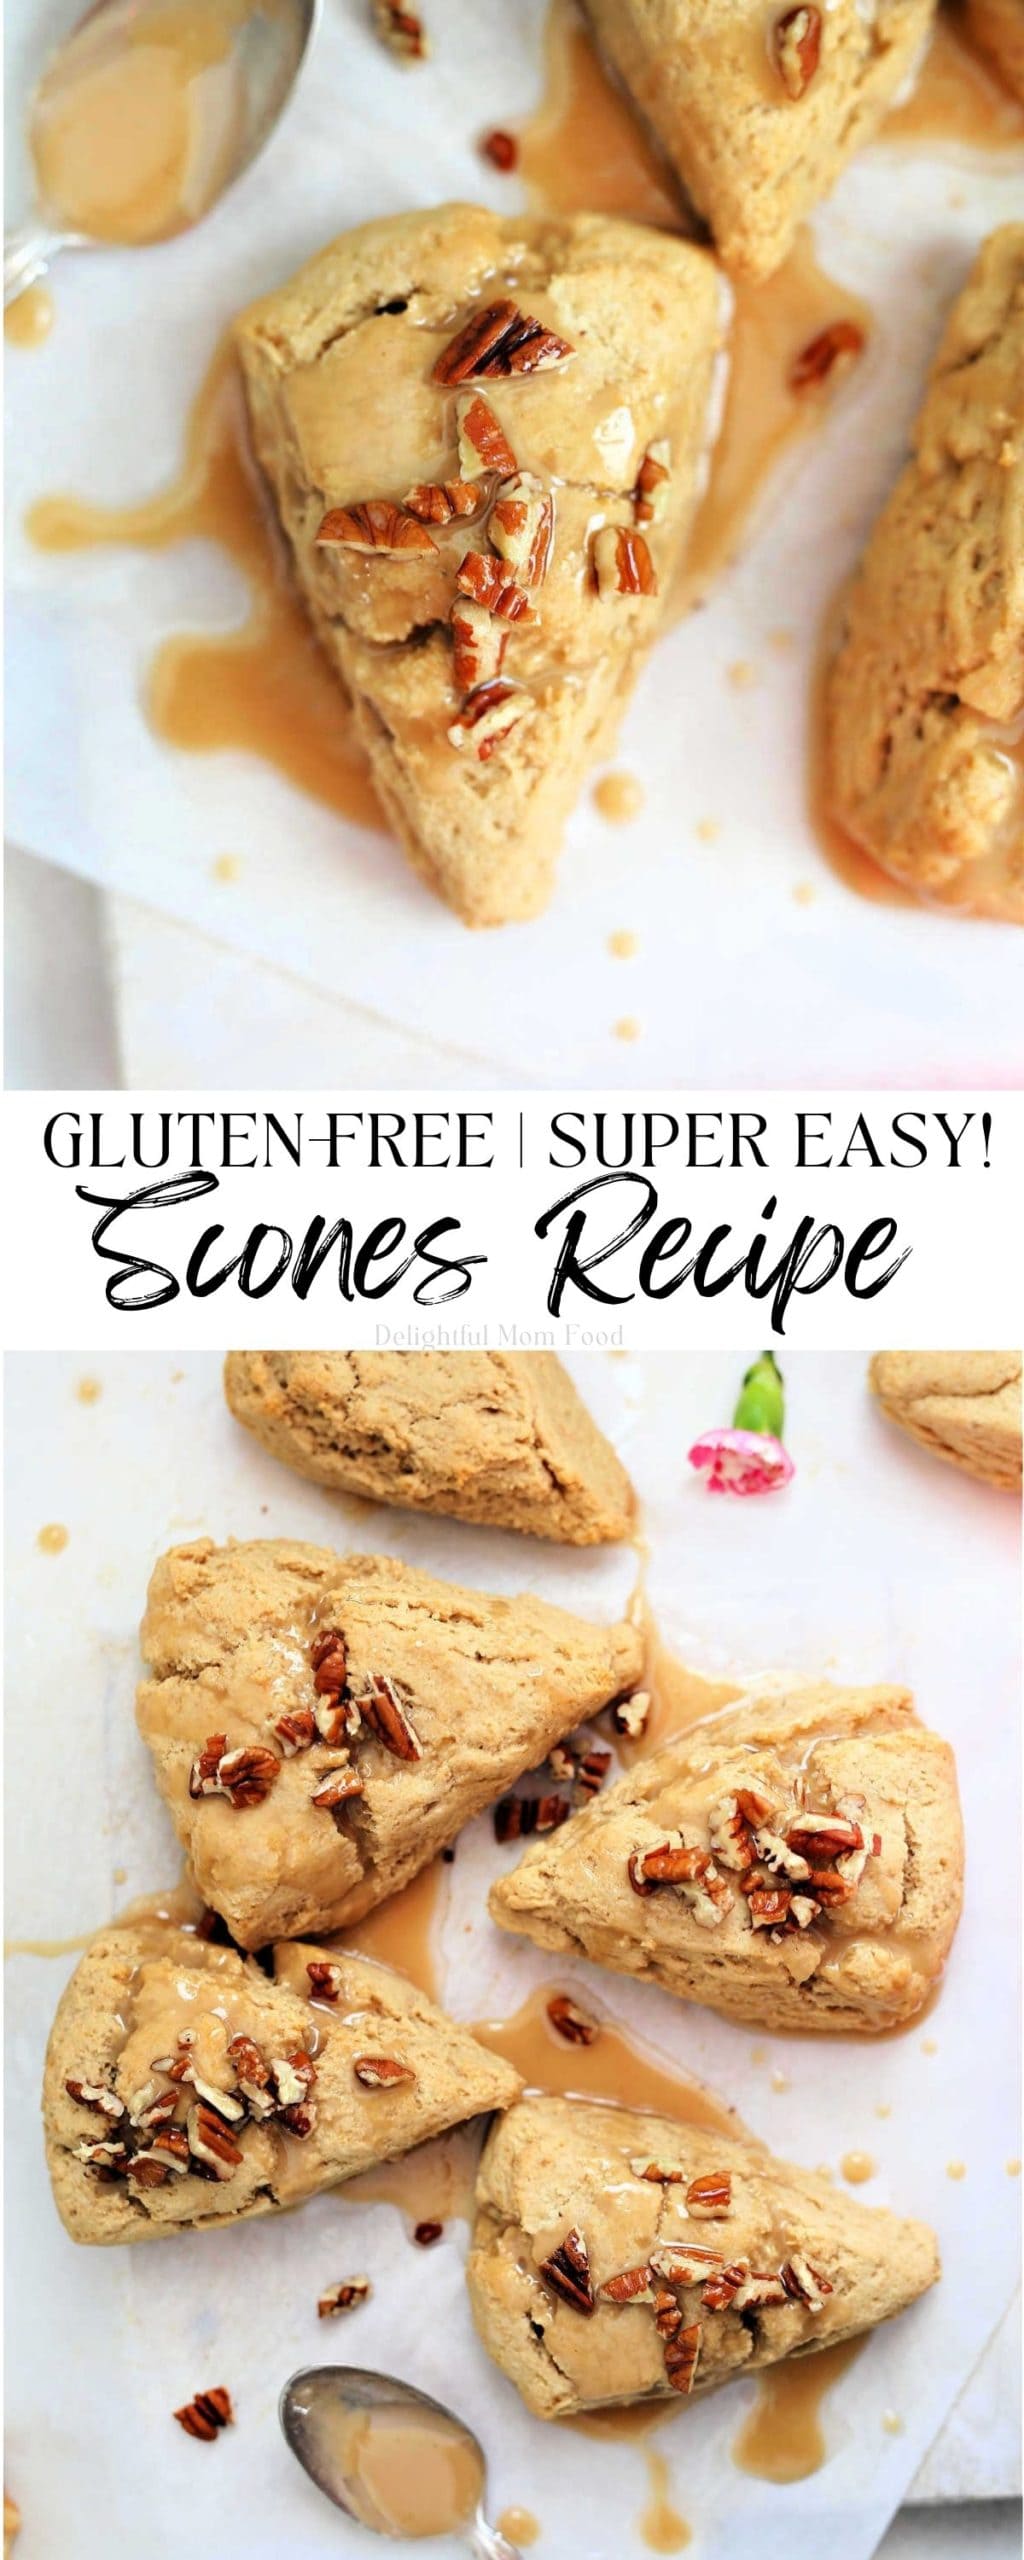 gluten free scone